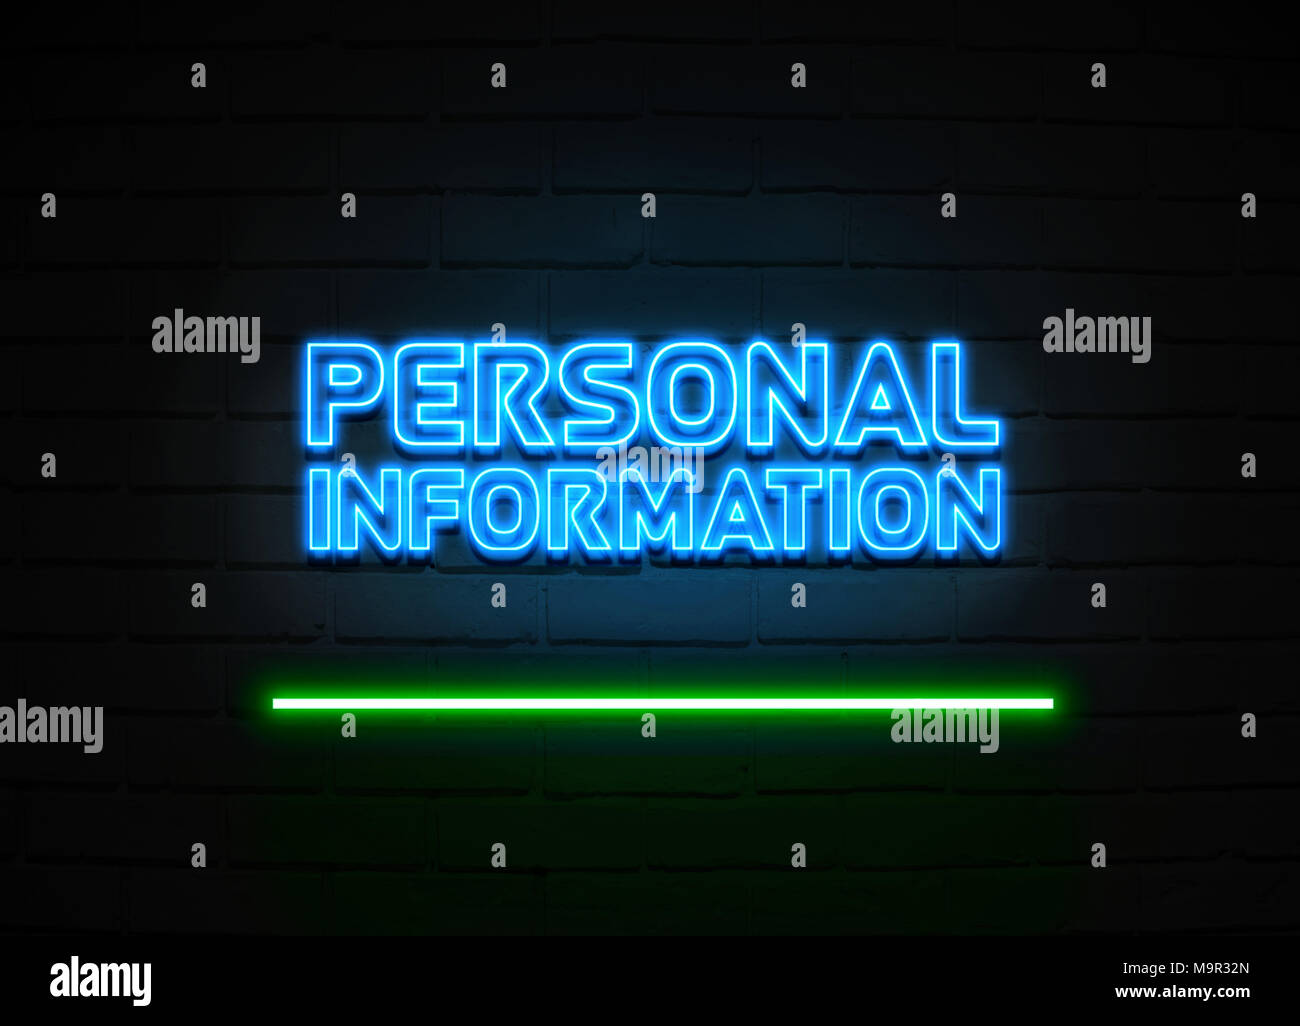 Persönliche Informationen Leuchtreklame - glühende Leuchtreklame auf brickwall Wand - 3D-Royalty Free Stock Illustration dargestellt. Stockfoto